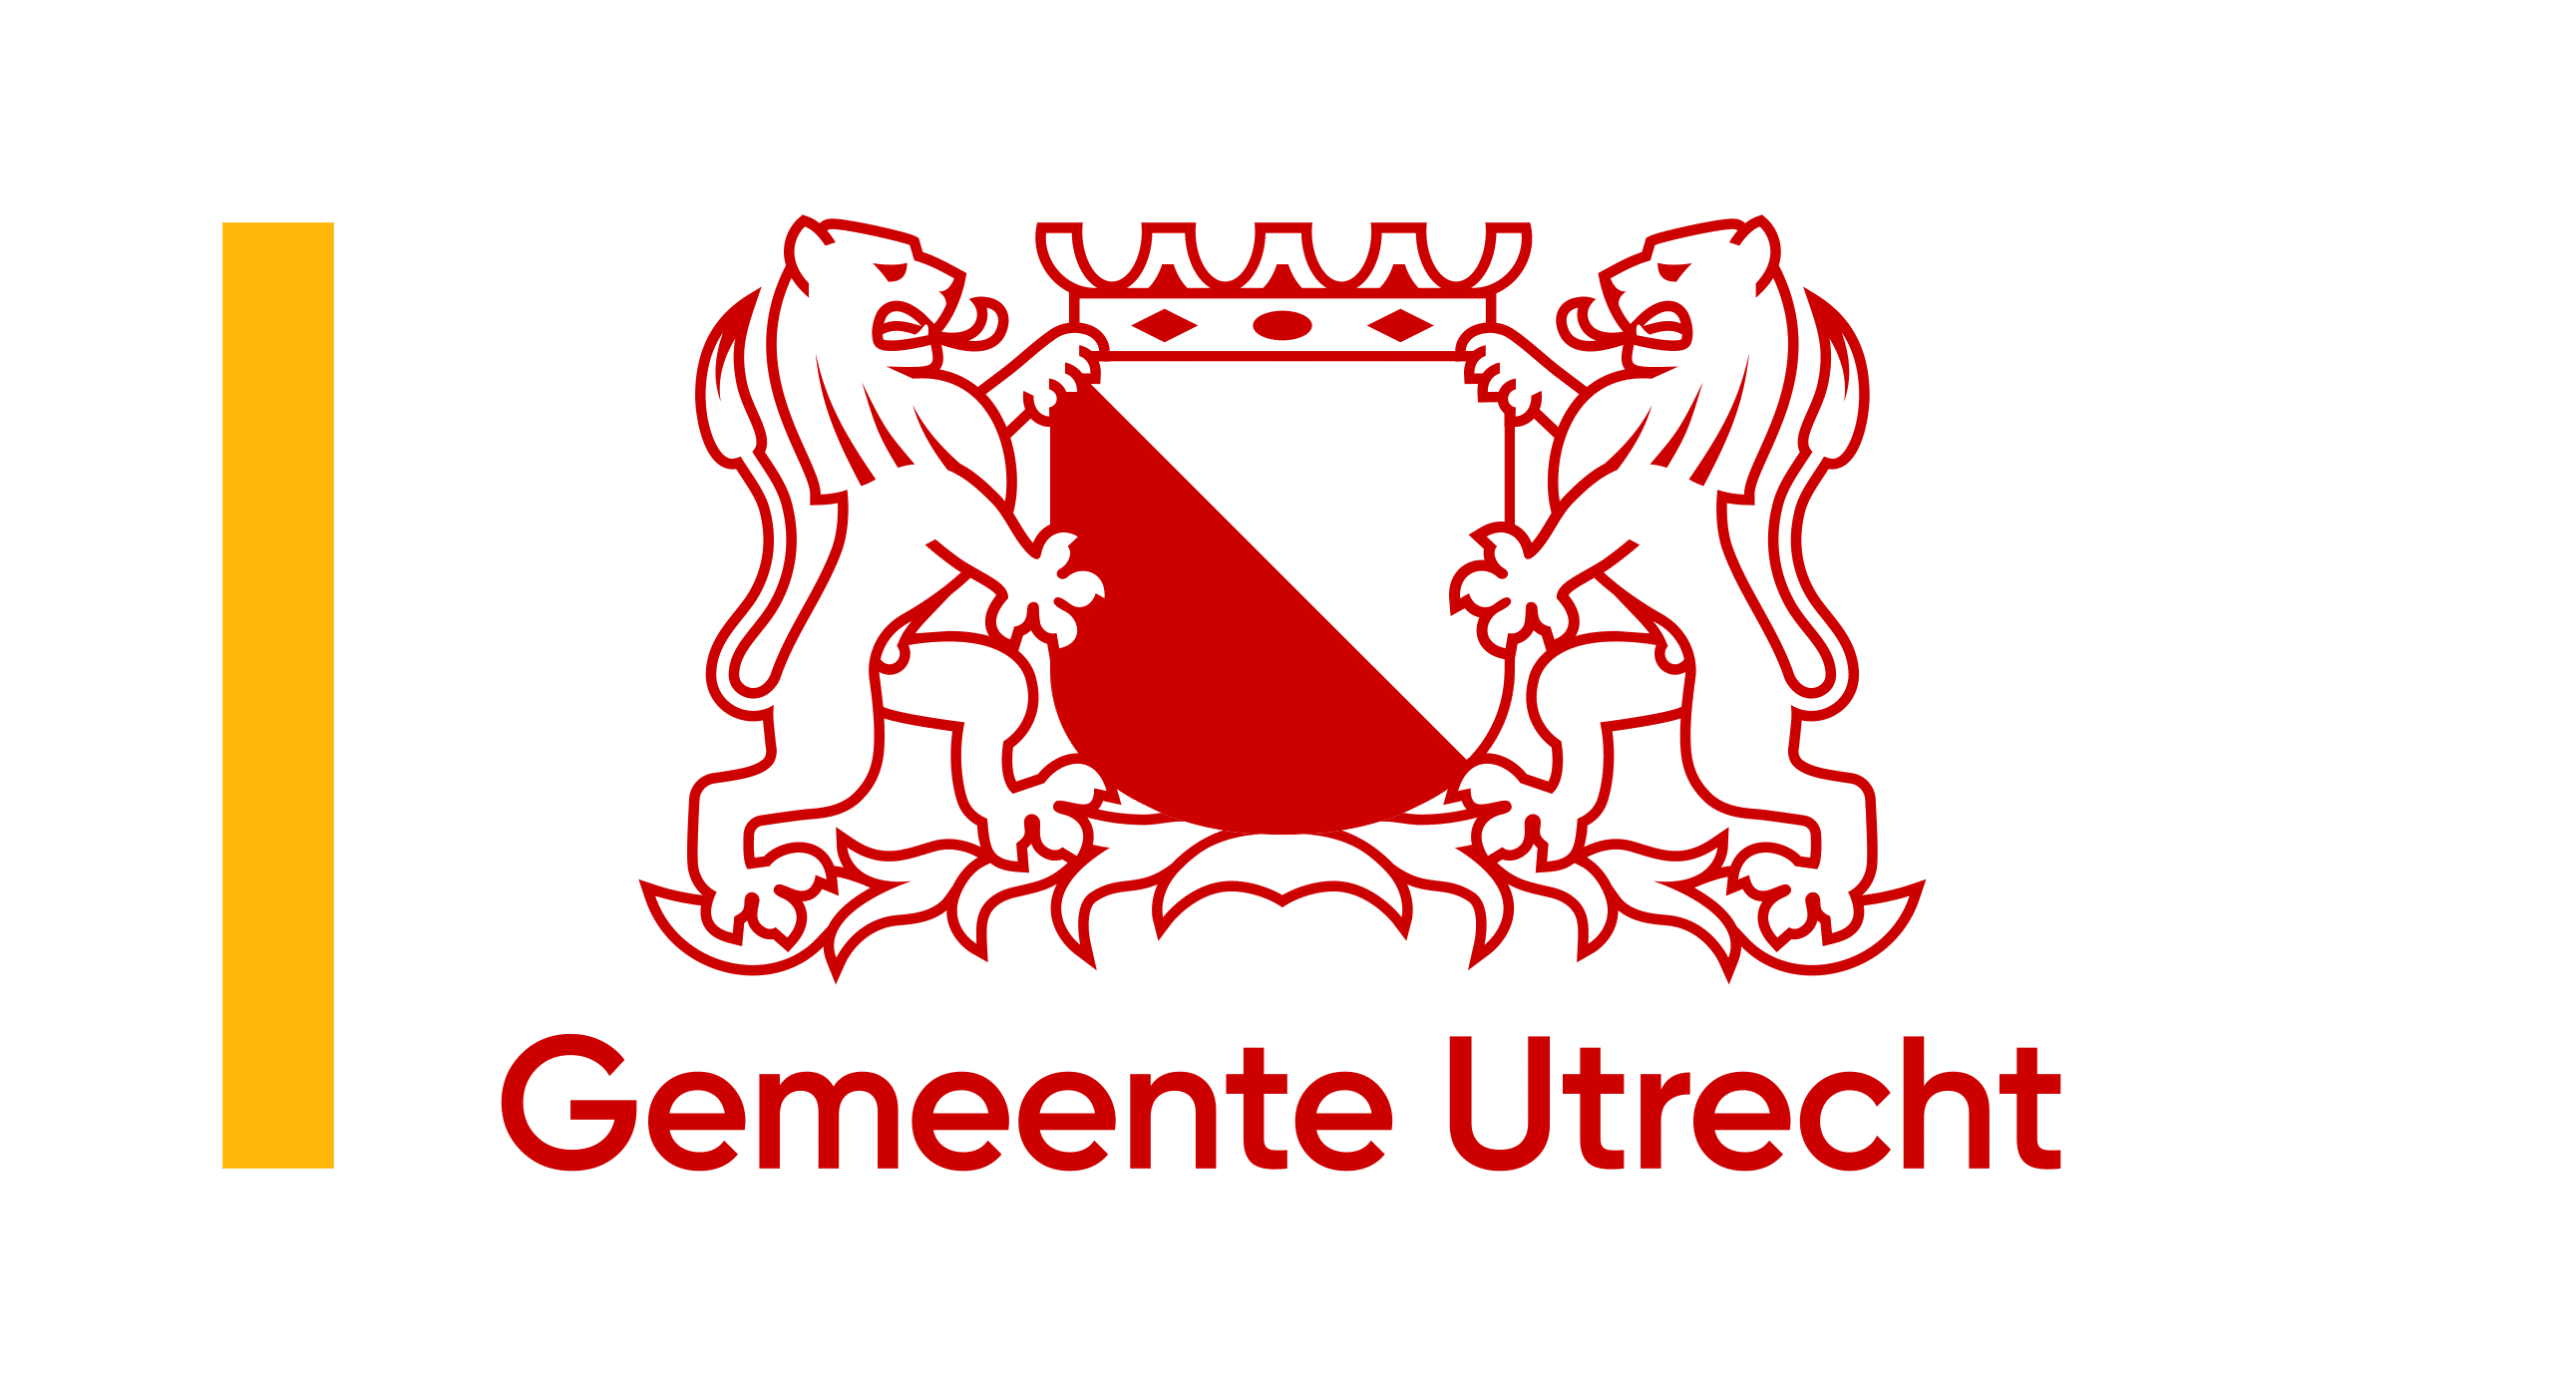 logo-gemeente-utrecht-nederlands-groot-1200.png